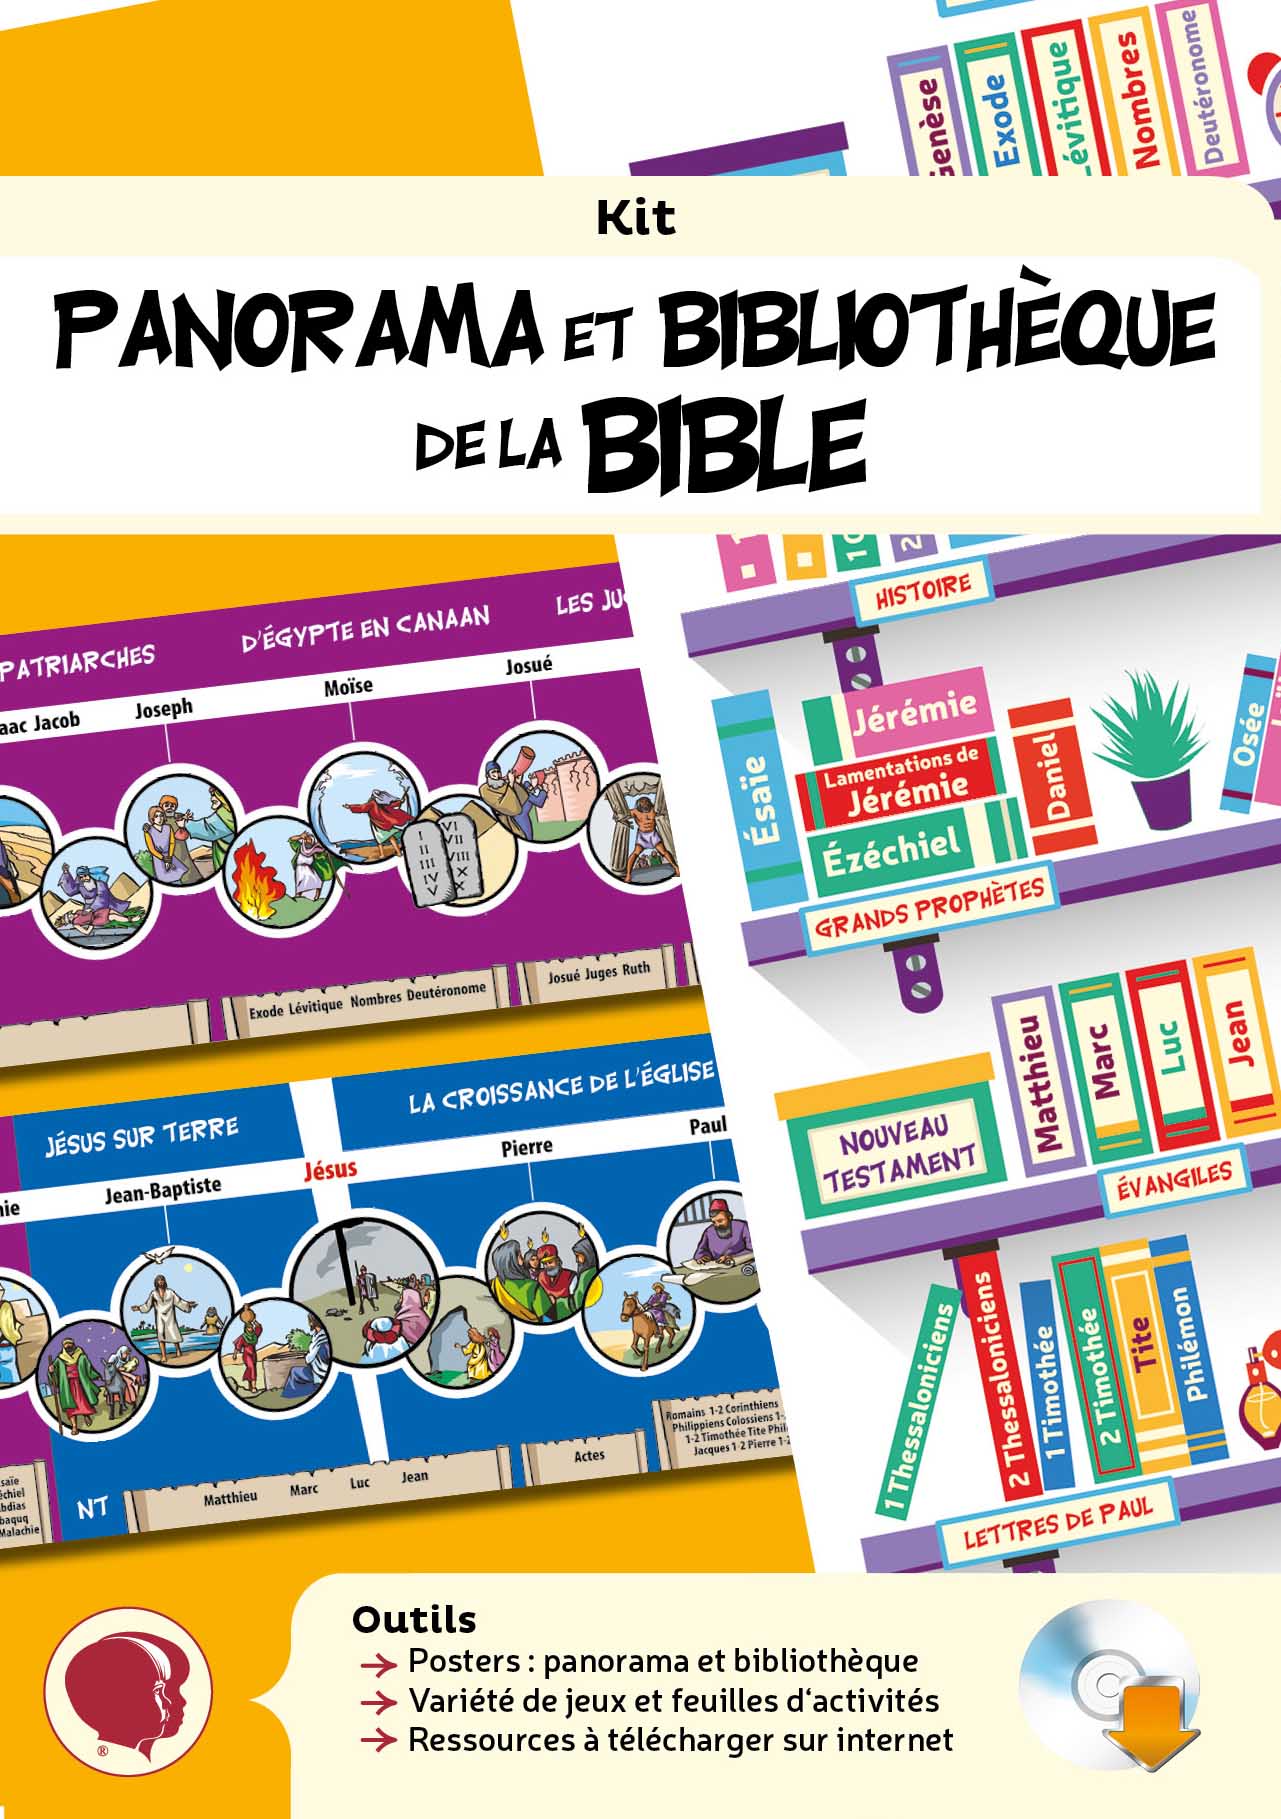 Kit Panorama et bibliothèques de la Bible